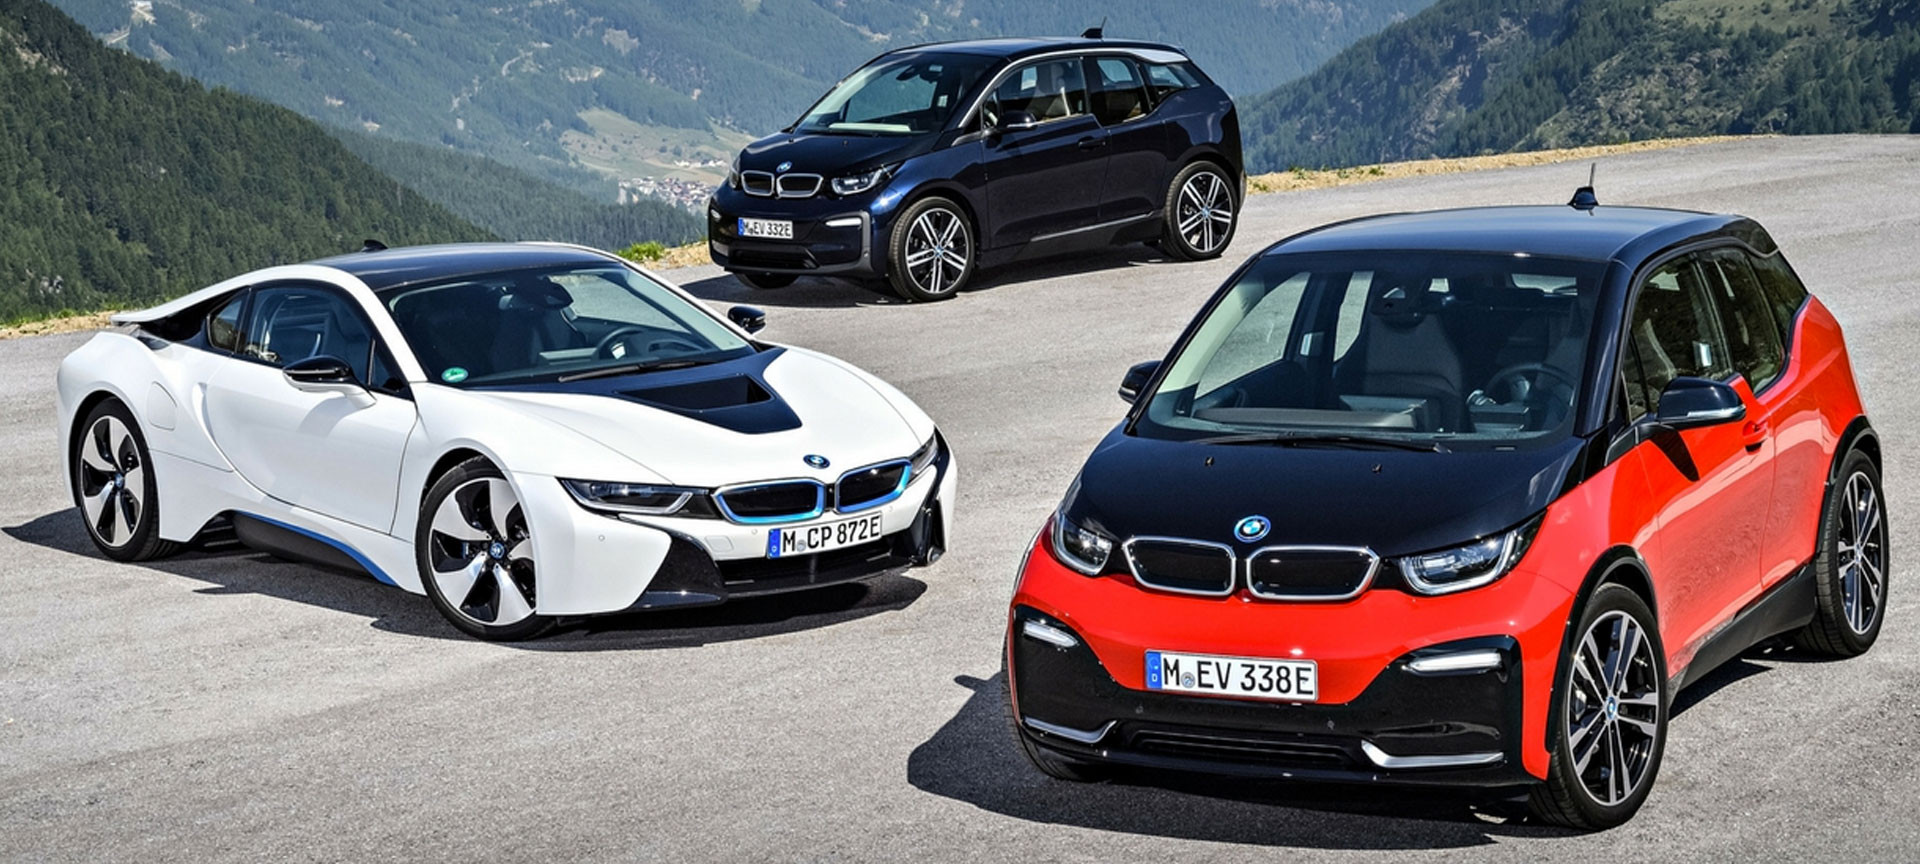 BMW yöneticisi: “Elektrikli araç teknolojisine geçiş konusu fazla abartılıyor”